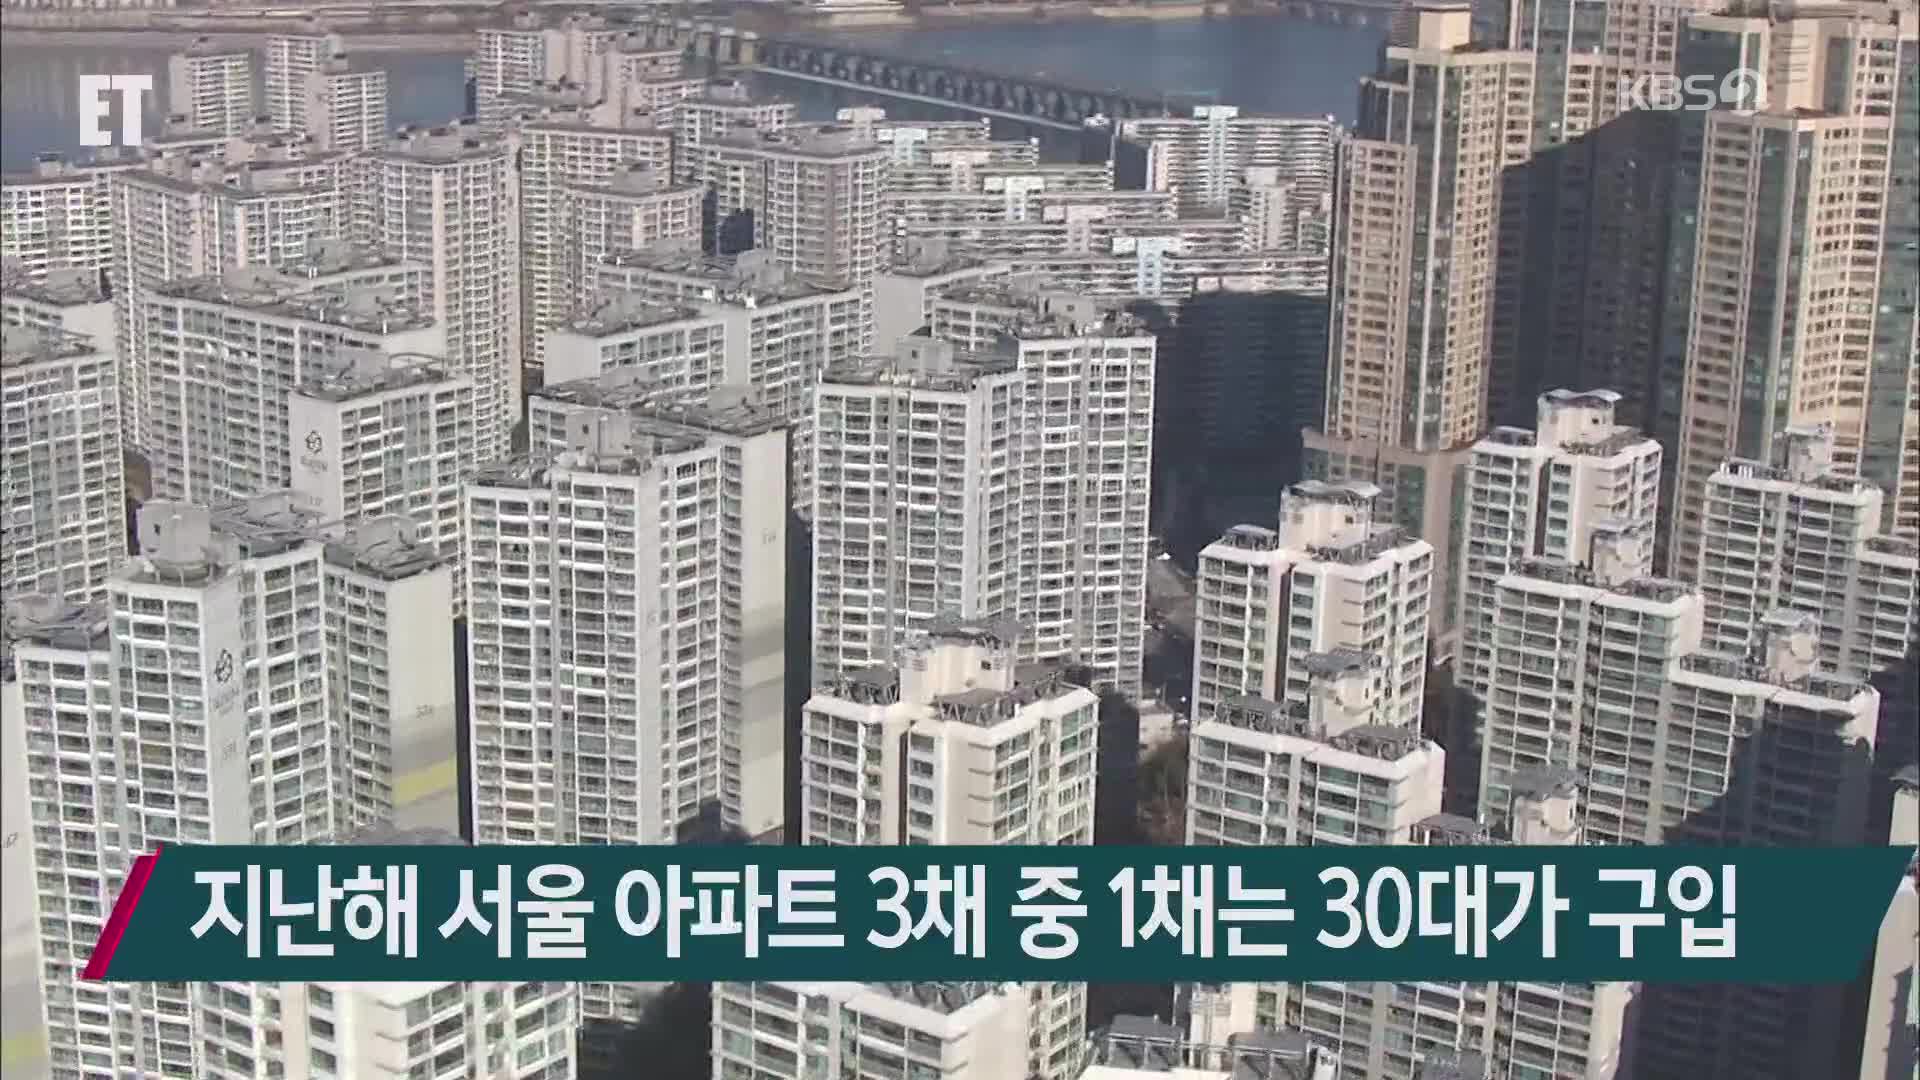 지난해 서울 아파트 3채 중 1채는 30대가 구입